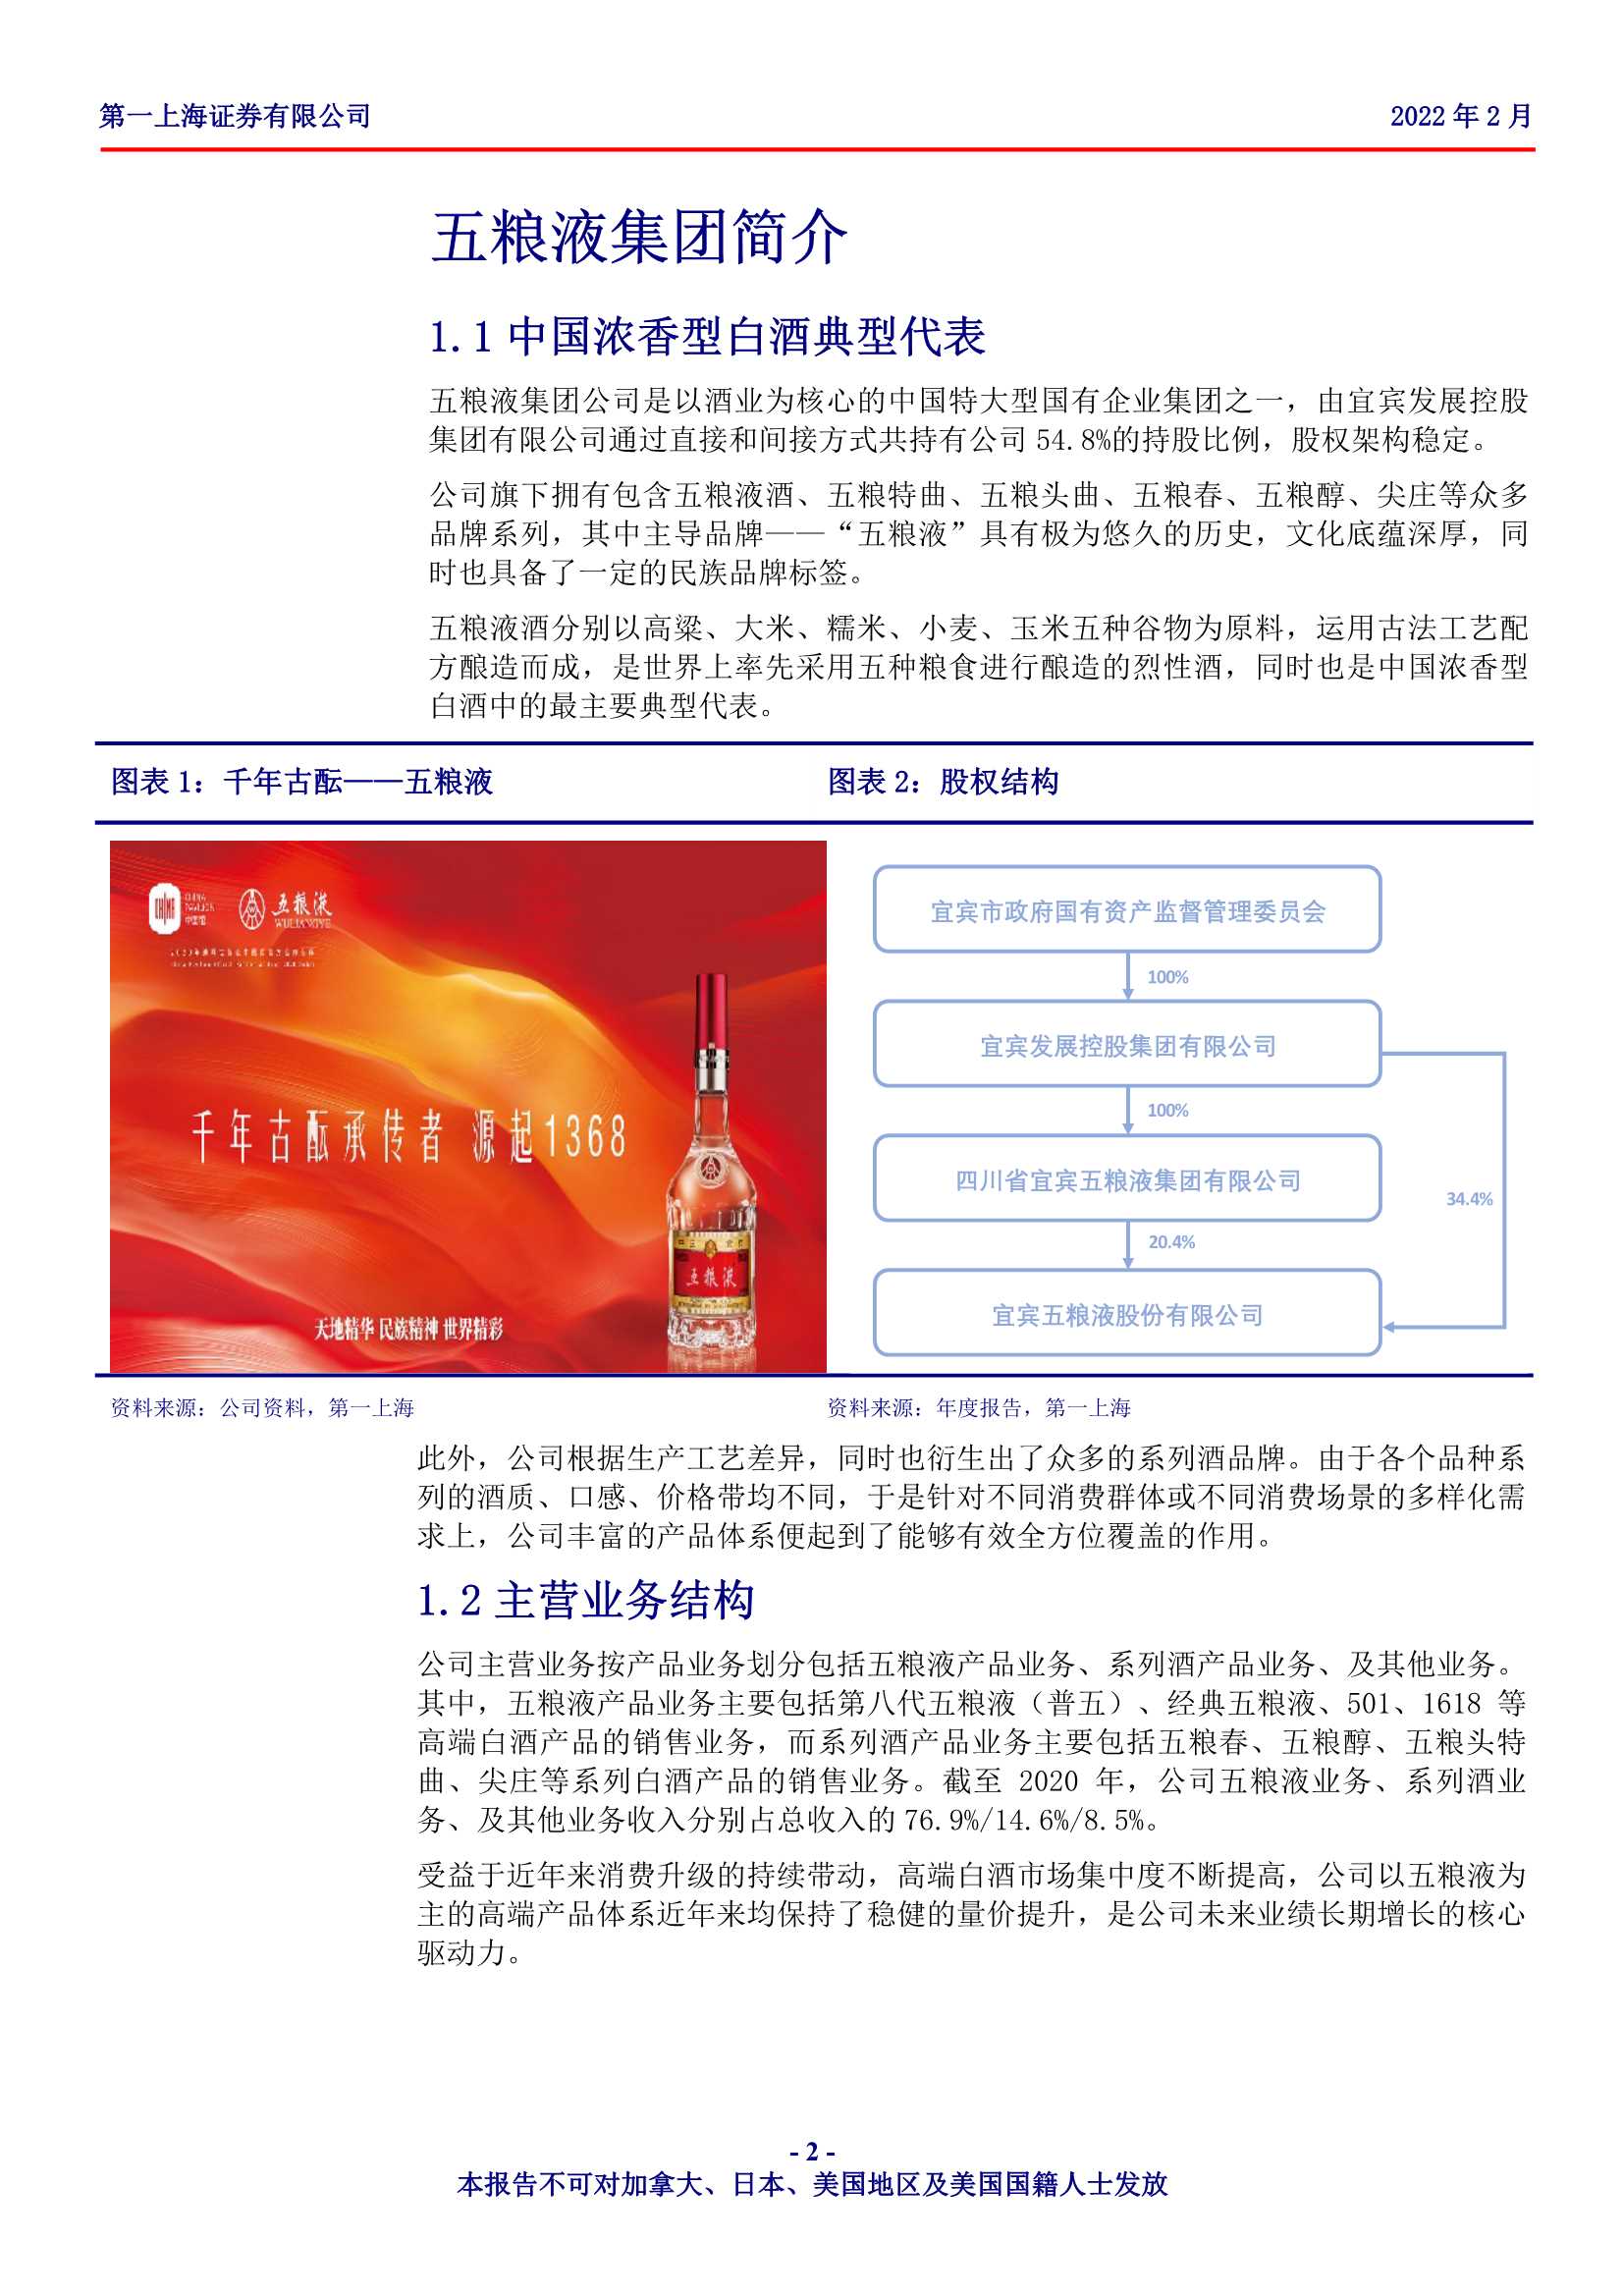 第一上海-五粮液-000858-浓香王长期核心竞争优势显著，管理层顺利调整有望实现估值修复-20220221-25页